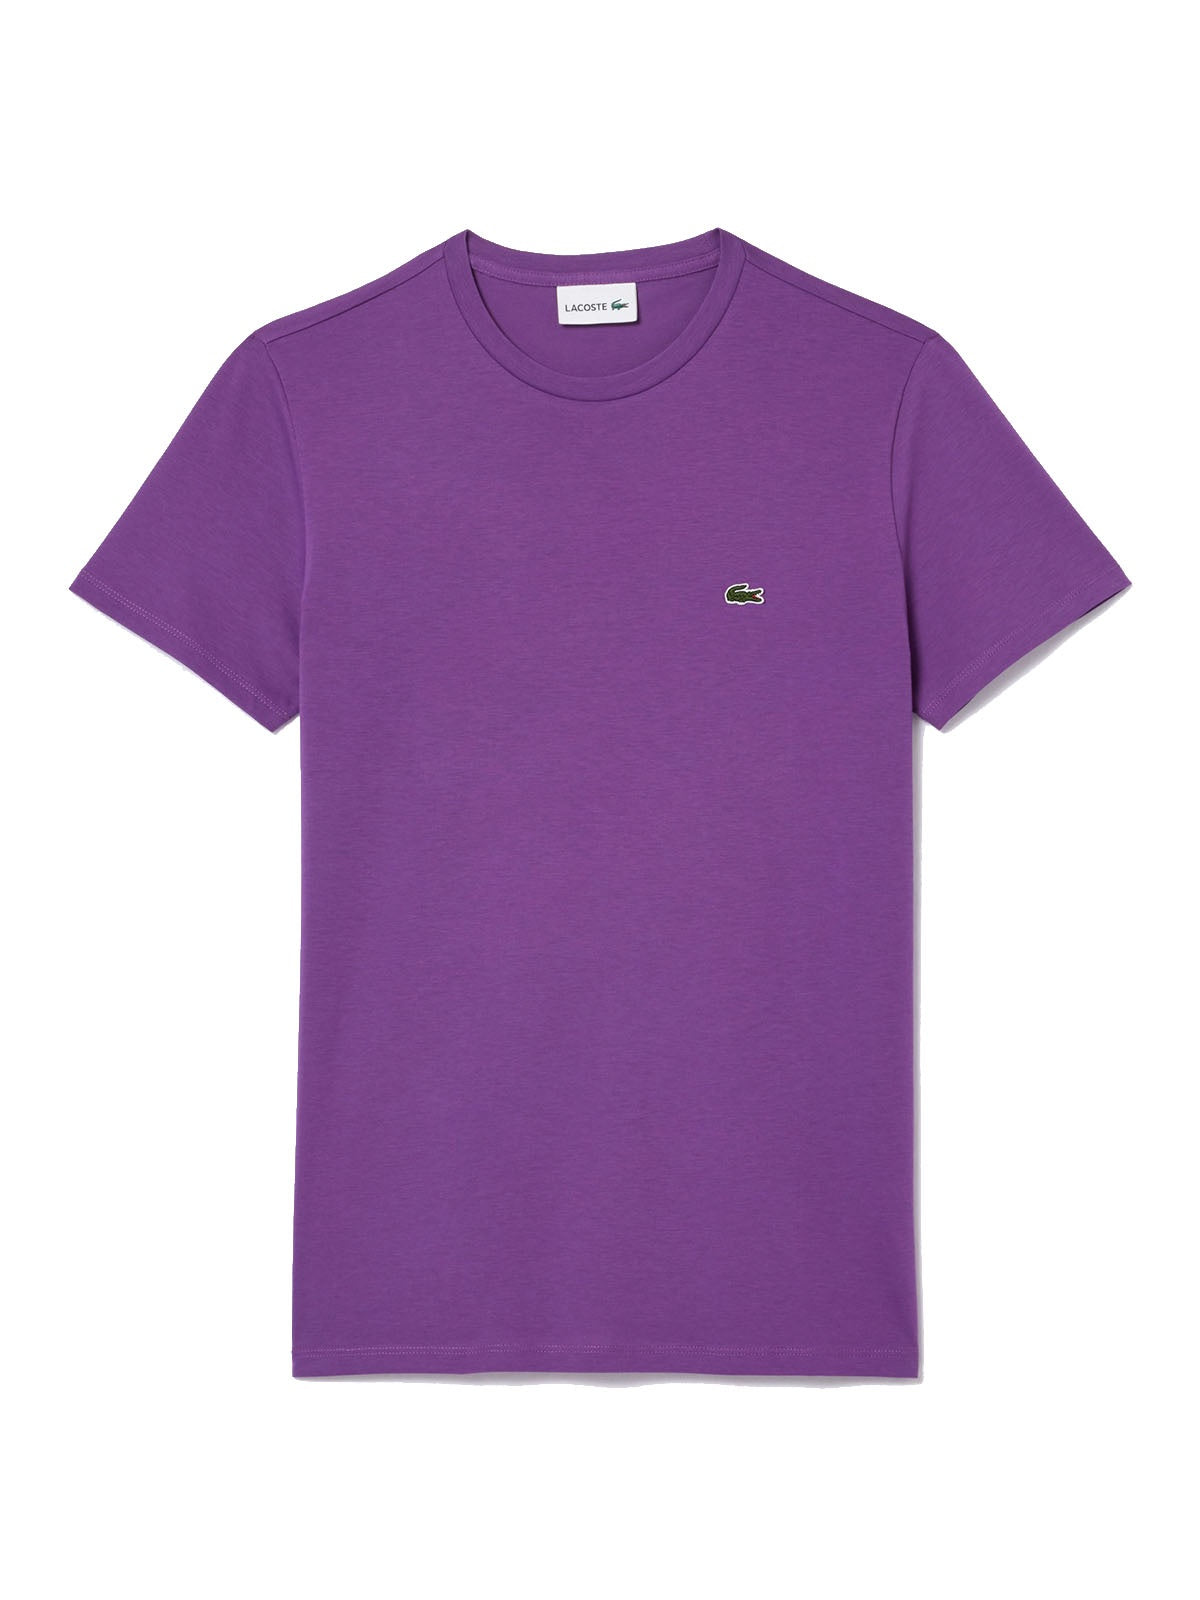 T-shirt Uomo Lacoste - T-Shirt A Girocollo In Jersey Di Cotone Pima - Viola